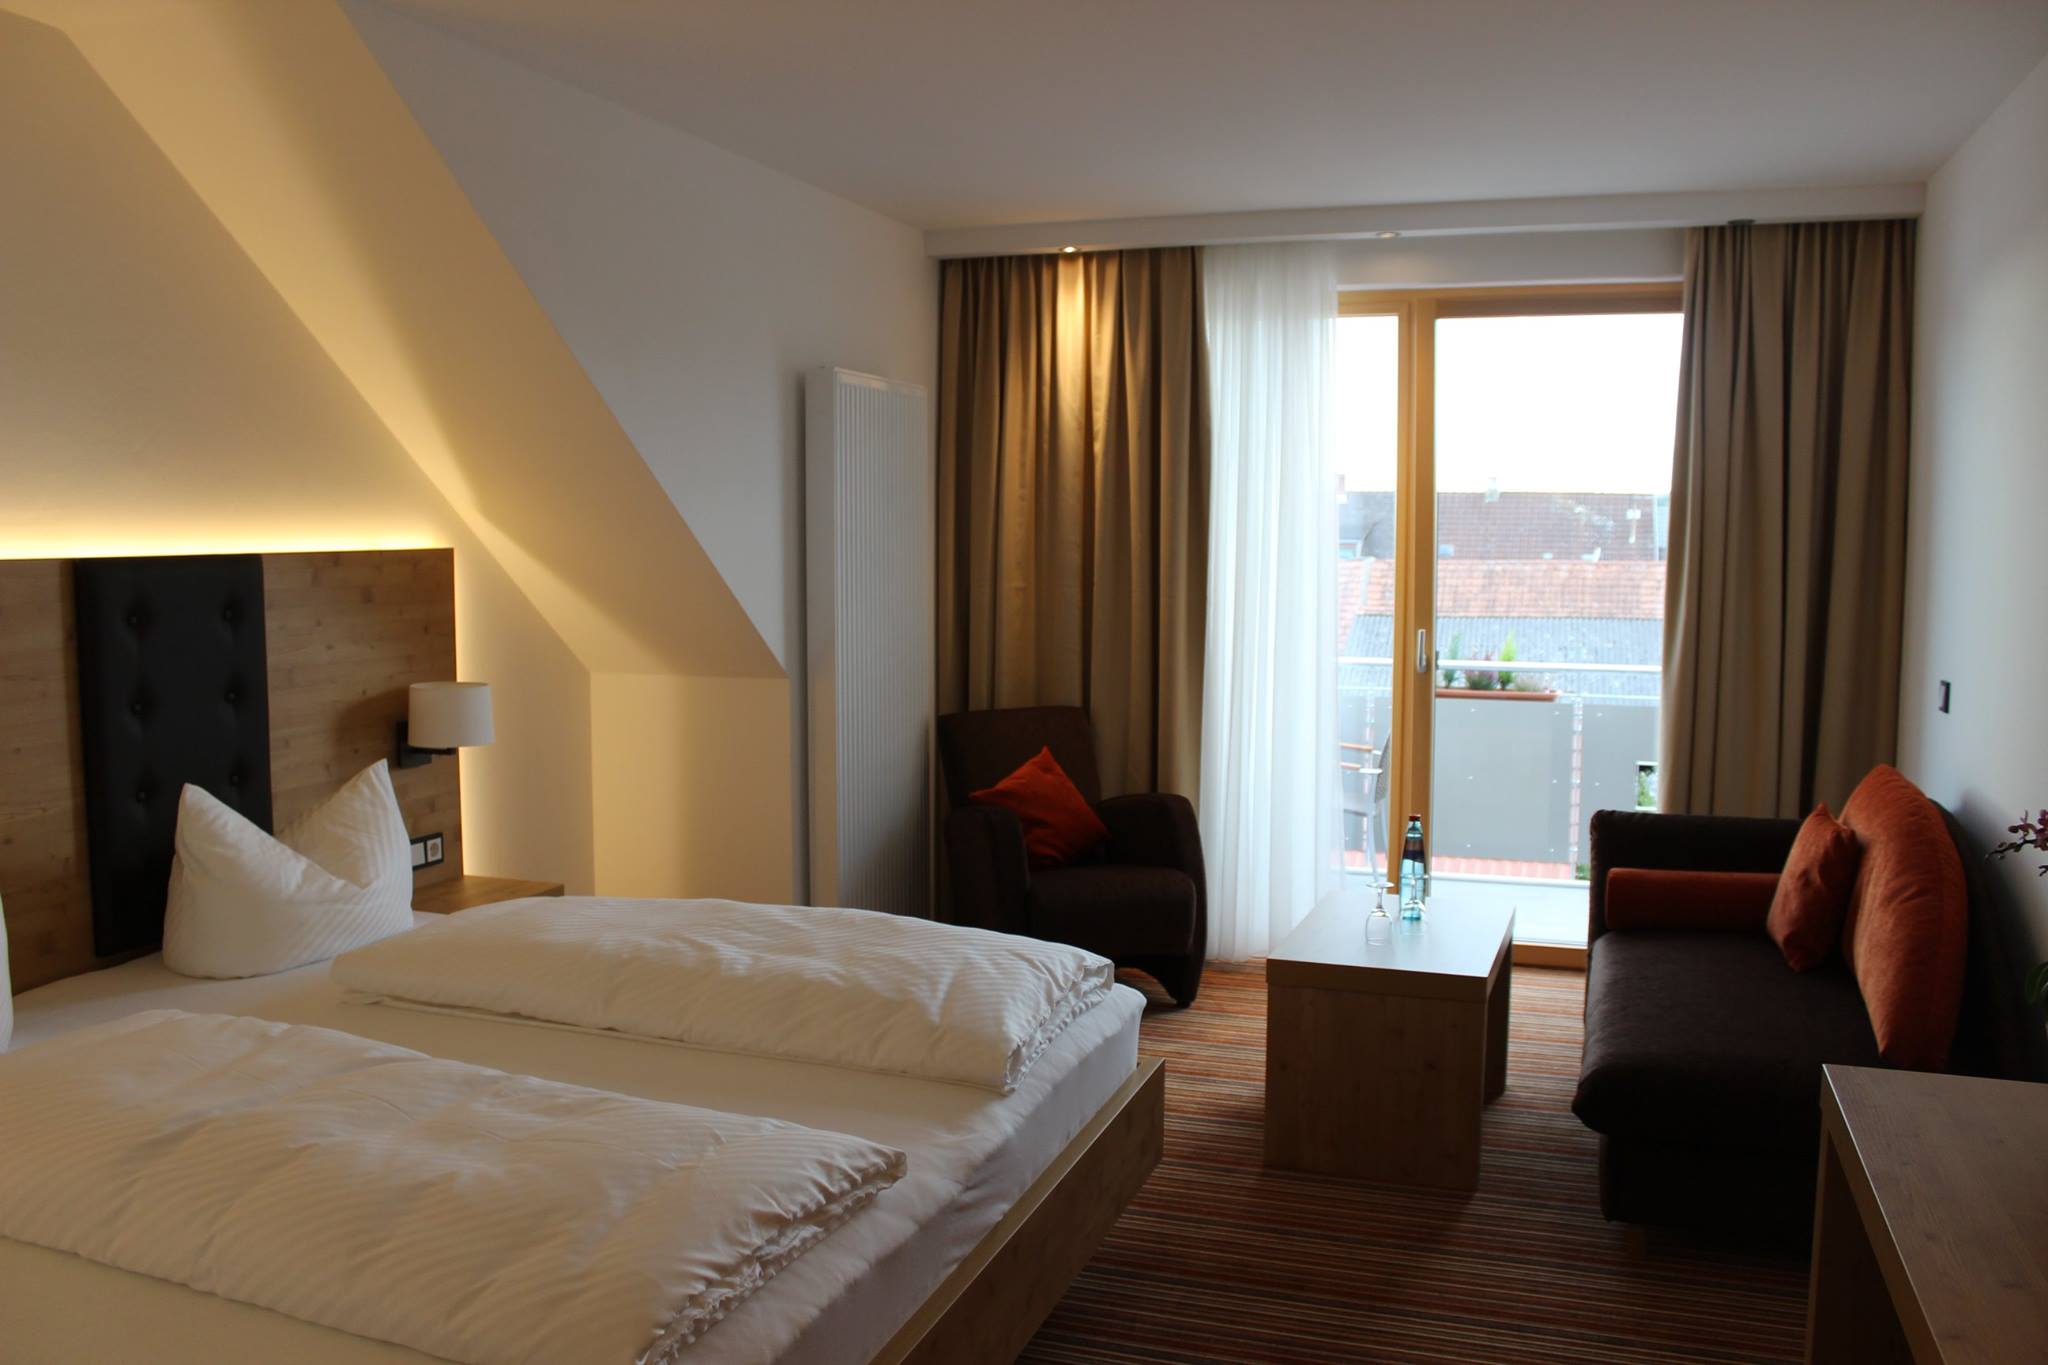 Zimmer mit Doppelbett, Balkon, Sofaecke